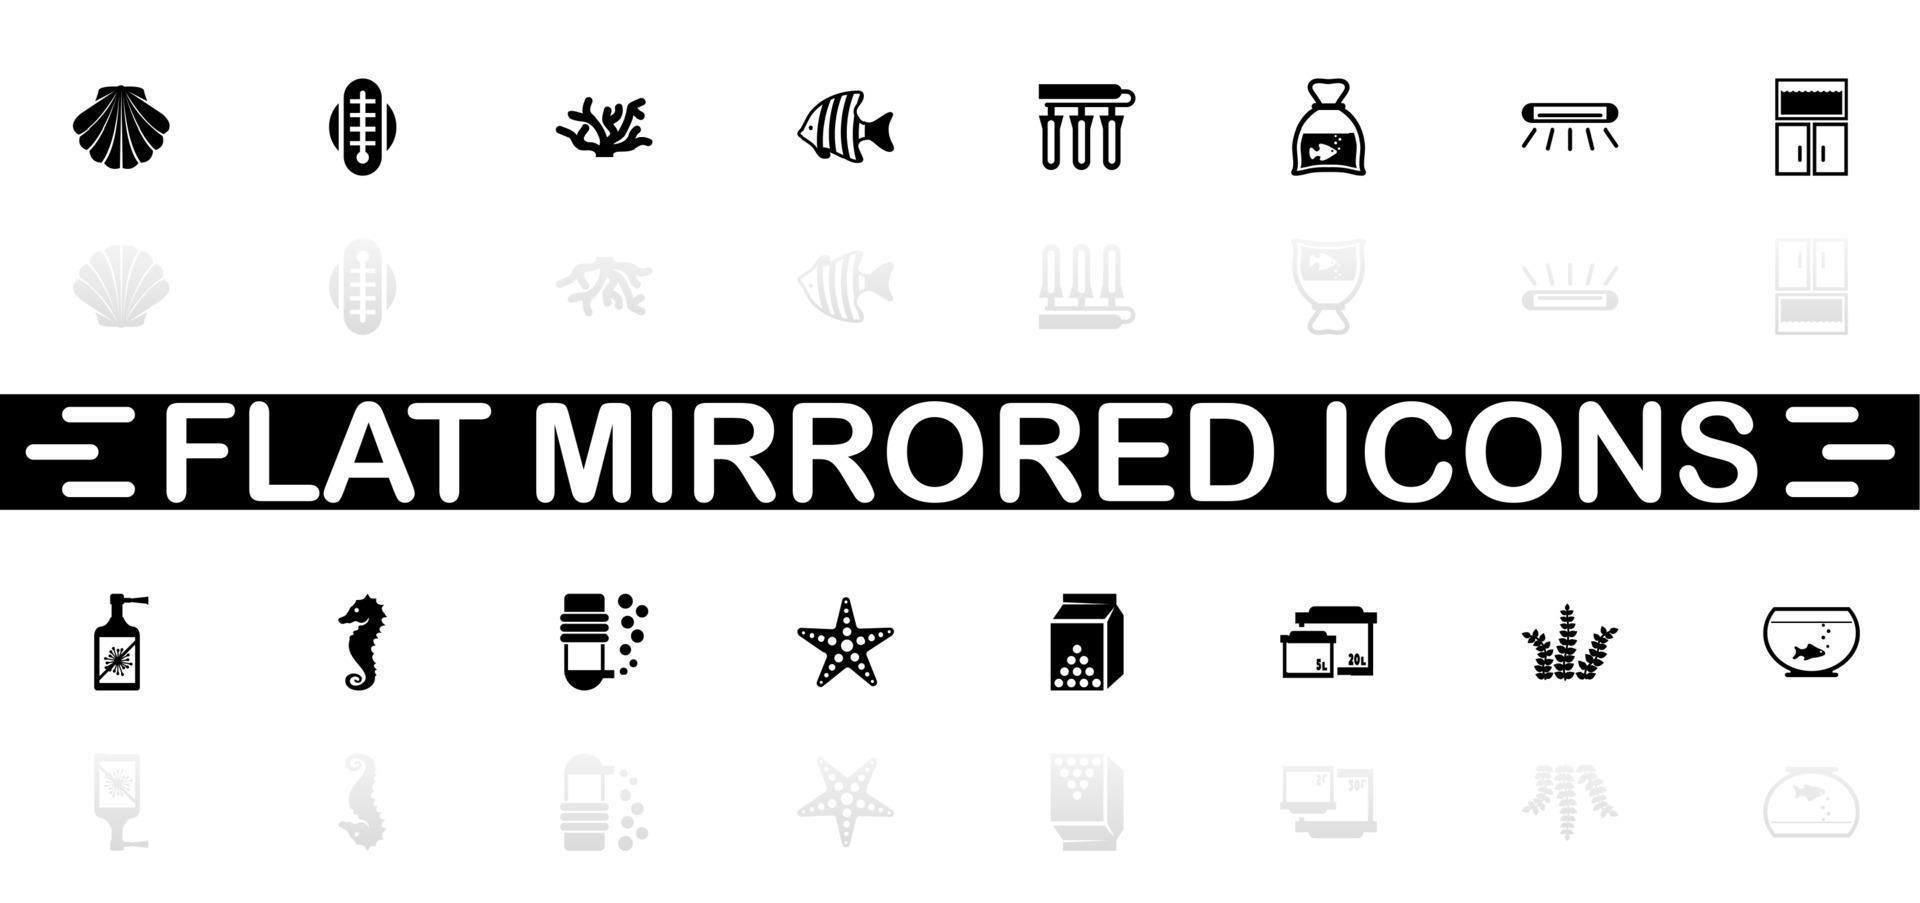 ícones do aquário - símbolo preto sobre fundo branco. ilustração simples. ícone de vetor plana. sombra de reflexão do espelho. pode ser usado no projeto de logotipo, web, mobile e ui ux.